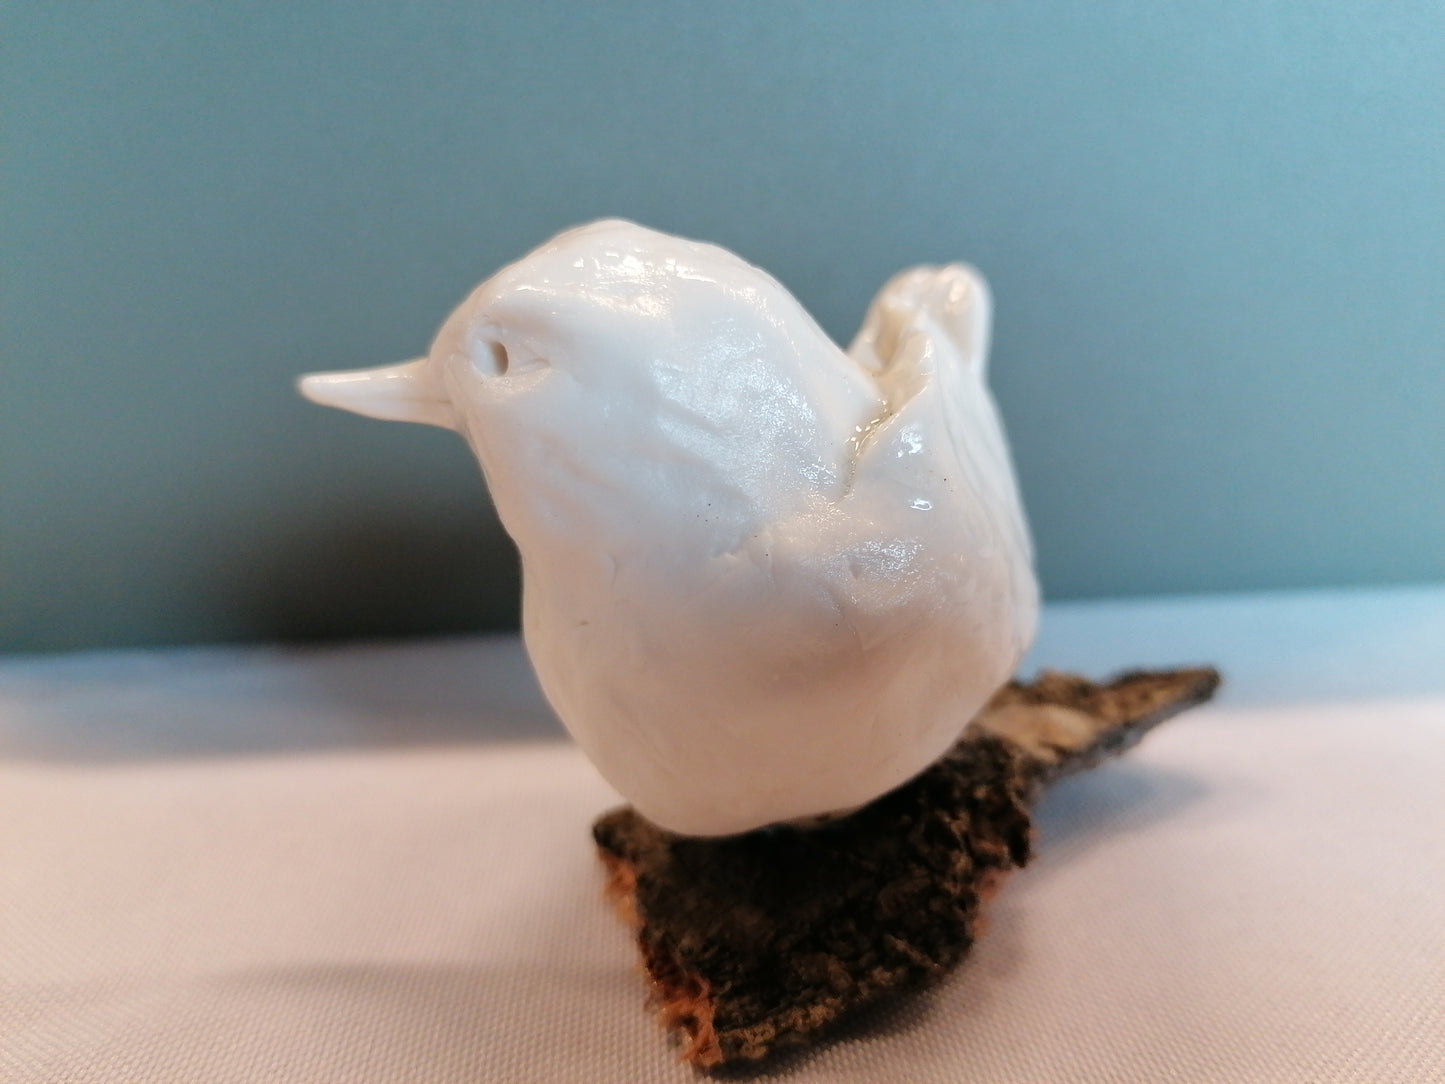 Oiseau de porcelaine n°6 by Sandrine De Zorzi